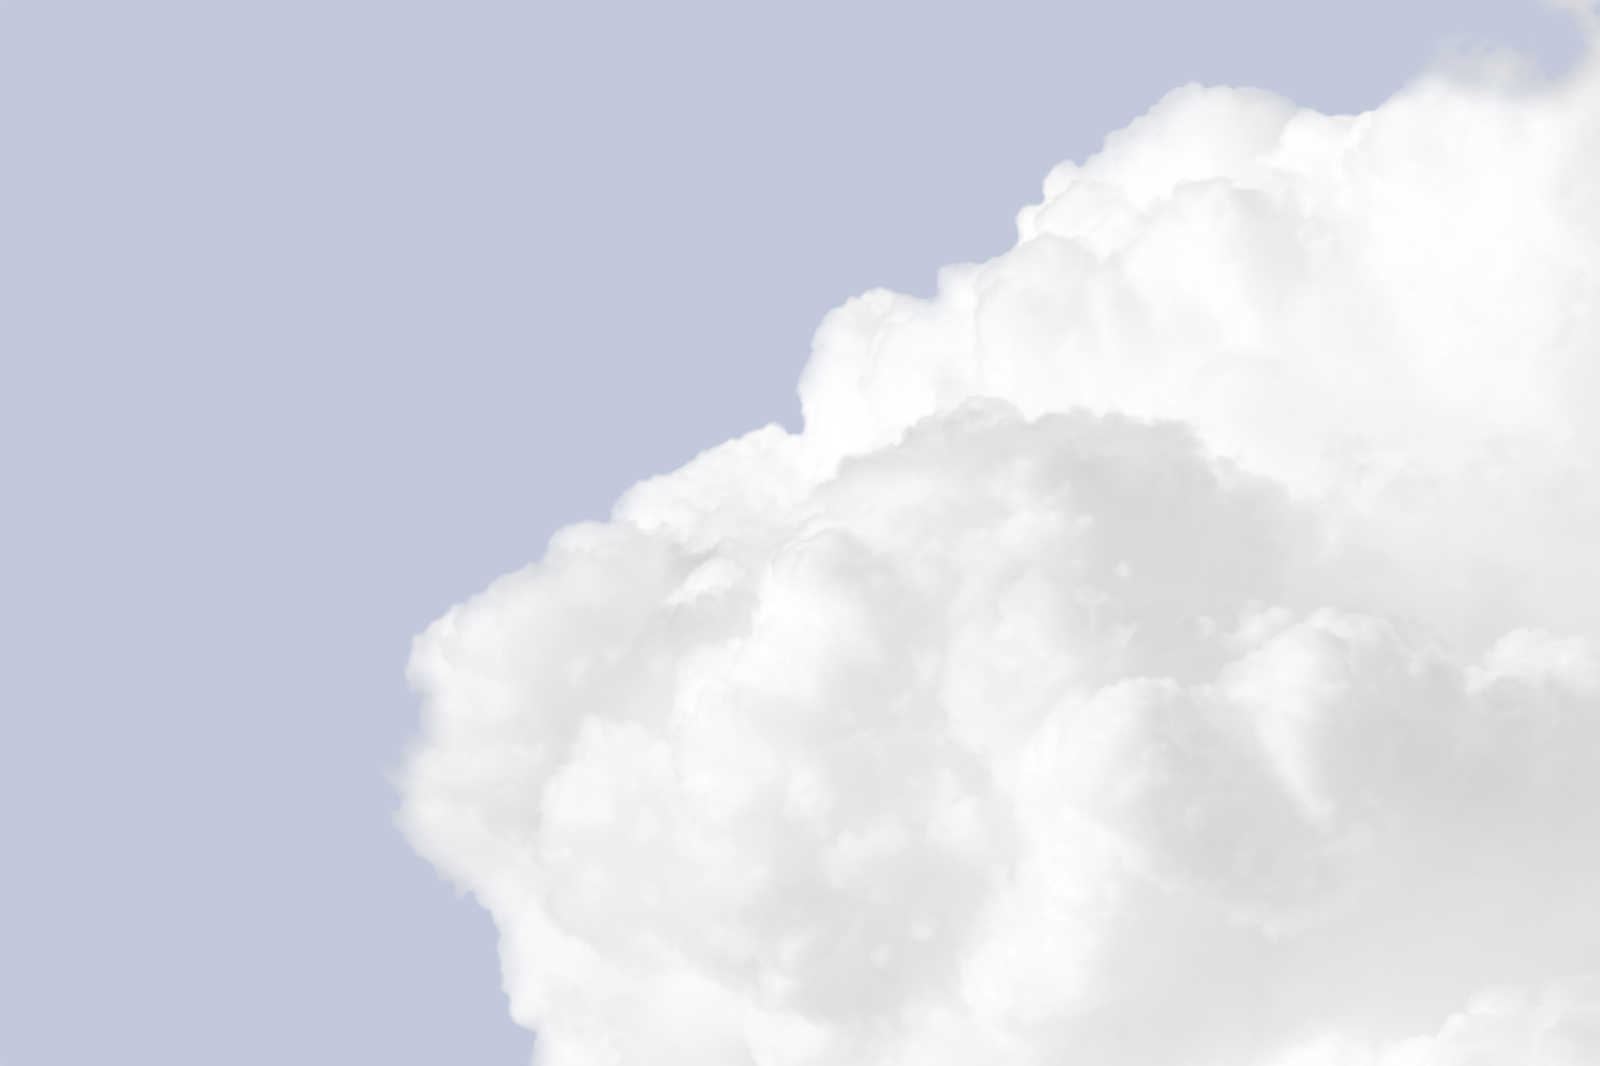             Toile avec nuages blancs dans un ciel bleu clair - 0,90 m x 0,60 m
        